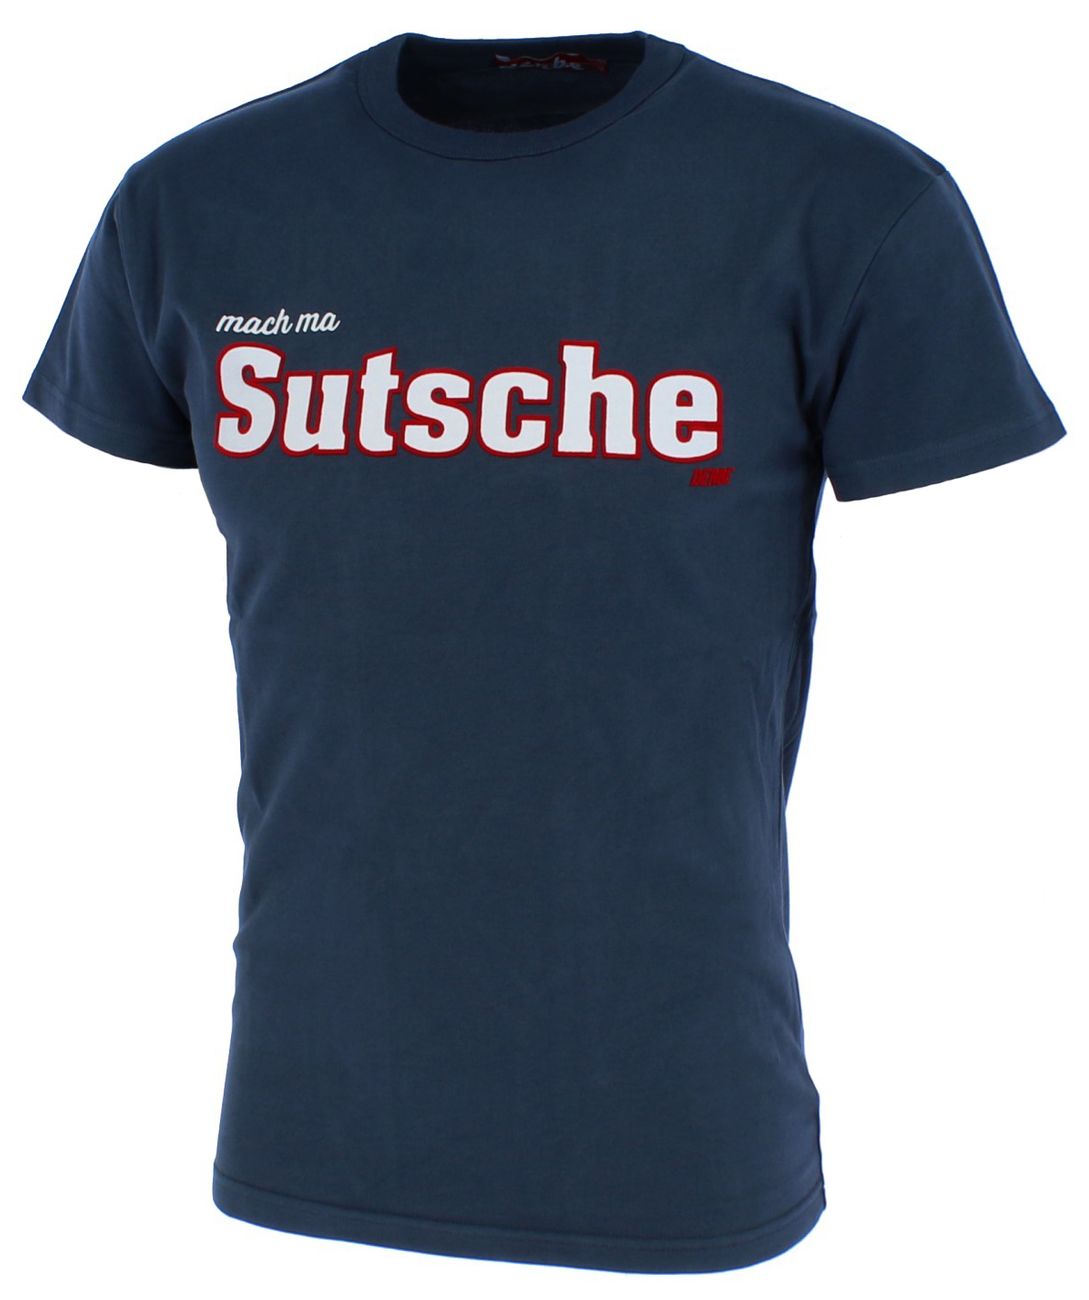 DERBE HAMBURG SUTSCHE BOYS Herren T-Shirt Bio-Baumwolle - Derbe Hamburg - SAGATOO - 4251634713750